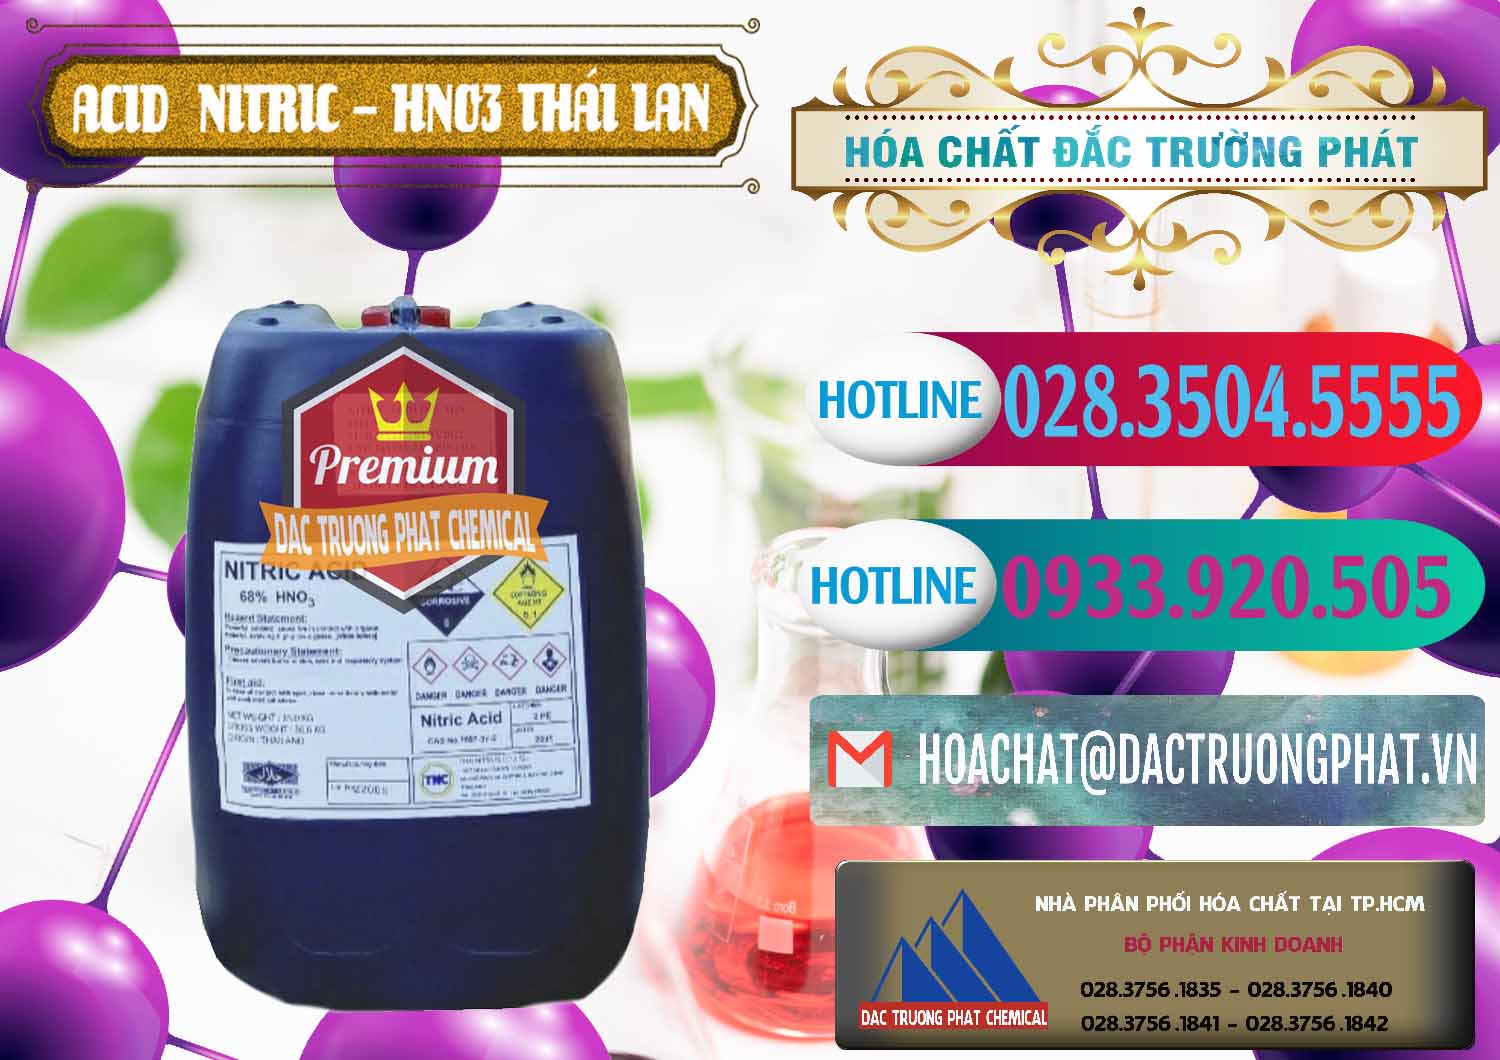 Cty chuyên cung cấp và bán Acid Nitric – Axit Nitric HNO3 Thái Lan Thailand - 0344 - Công ty chuyên cung ứng và phân phối hóa chất tại TP.HCM - truongphat.vn